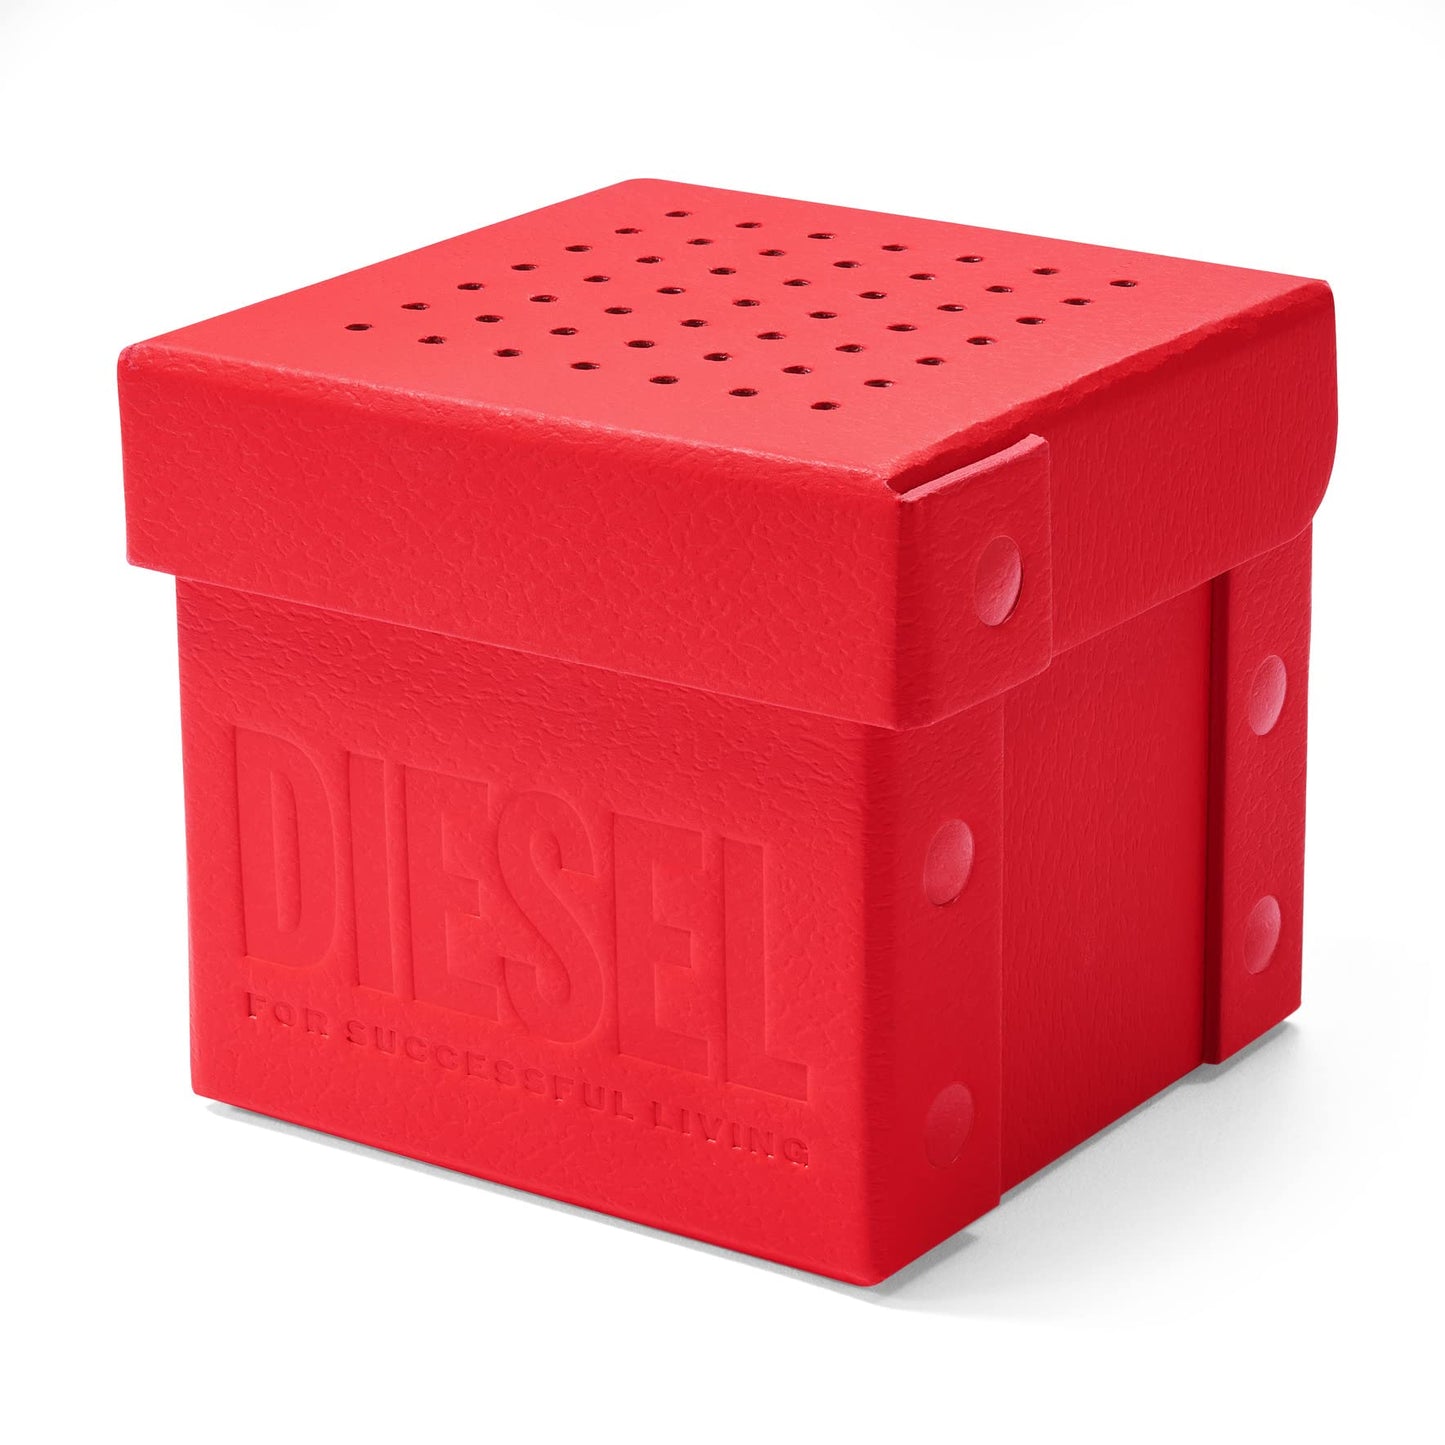 Diesel Analog Gold Dial Men's Watch-DZ4659